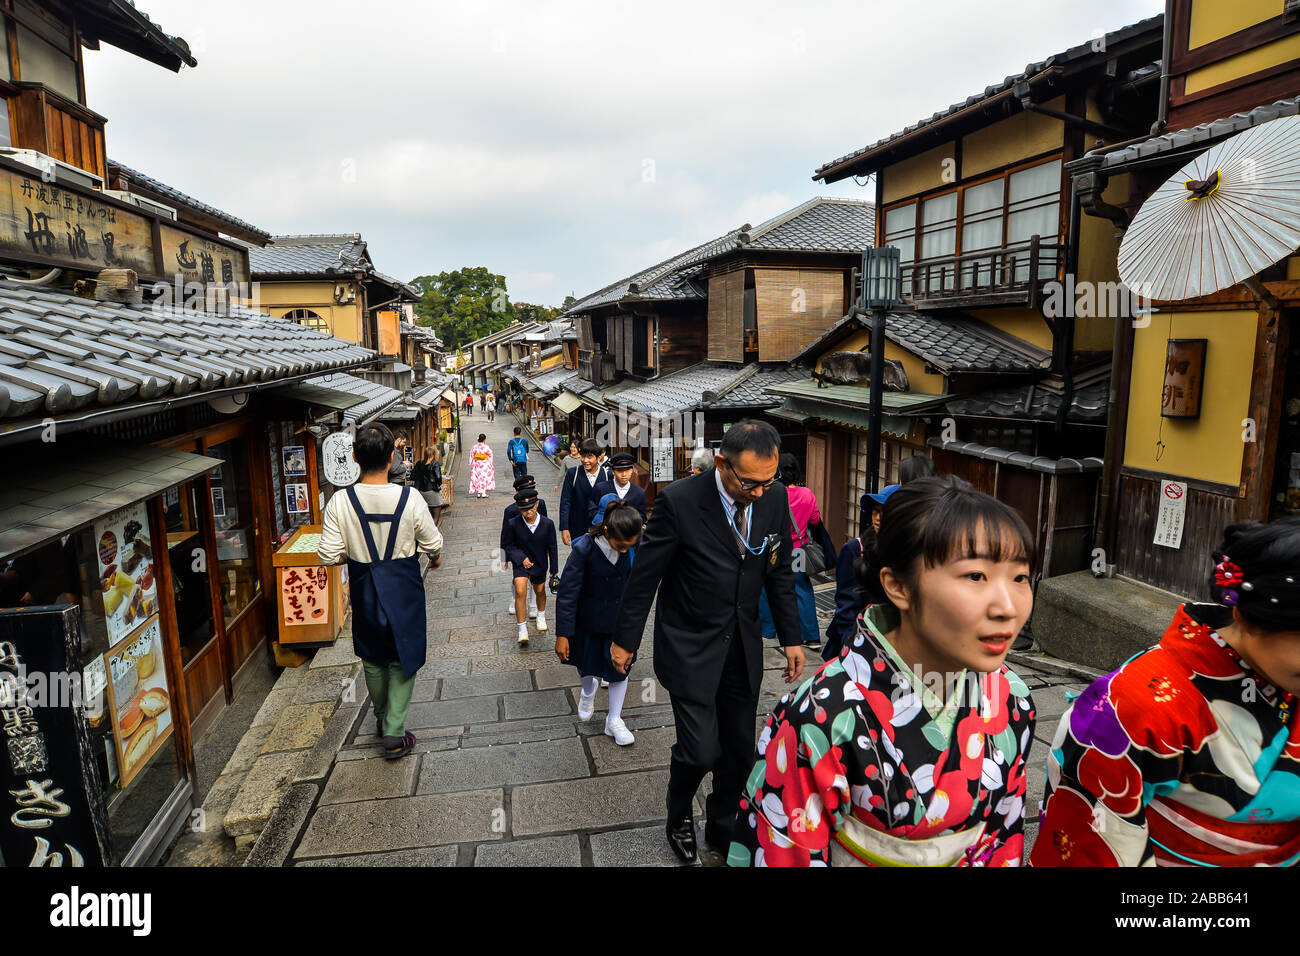 Kyoto, Japan - 10/30/19 - die Menschen in den alten Straßen rund um den Kiyomizu-dera Tempel komplex. Stockfoto